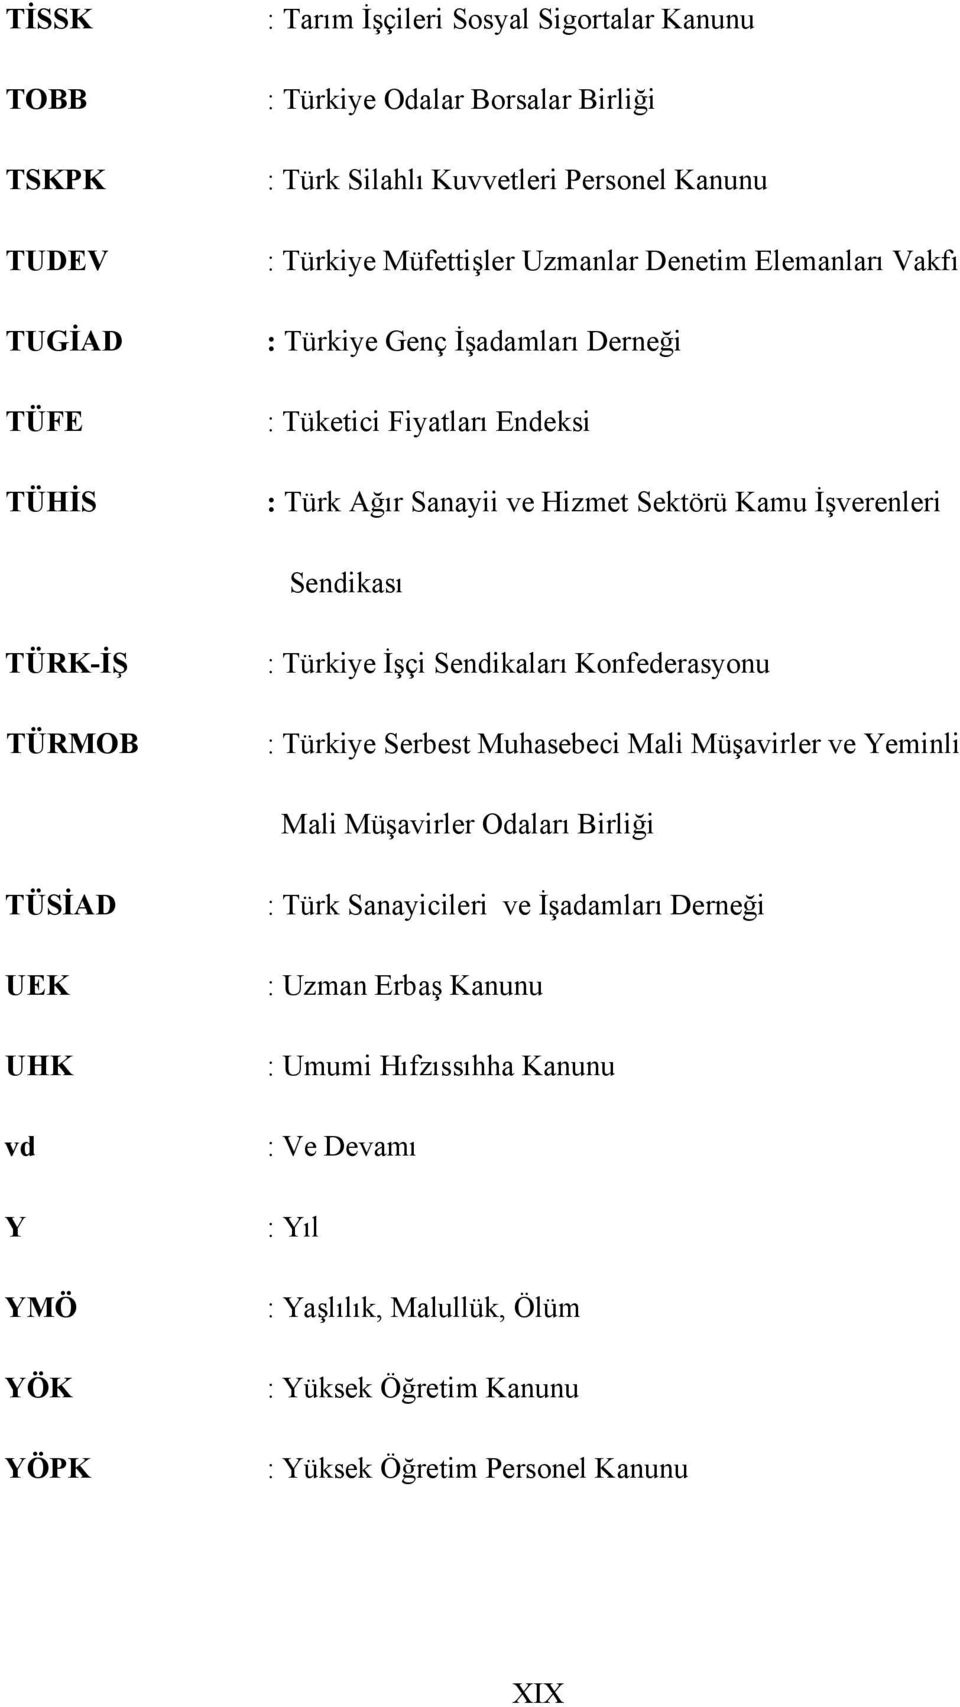 TÜRK-İŞ TÜRMOB : Türkiye İşçi Sendikaları Konfederasyonu : Türkiye Serbest Muhasebeci Mali Müşavirler ve Yeminli Mali Müşavirler Odaları Birliği TÜSİAD UEK UHK vd Y YMÖ YÖK YÖPK